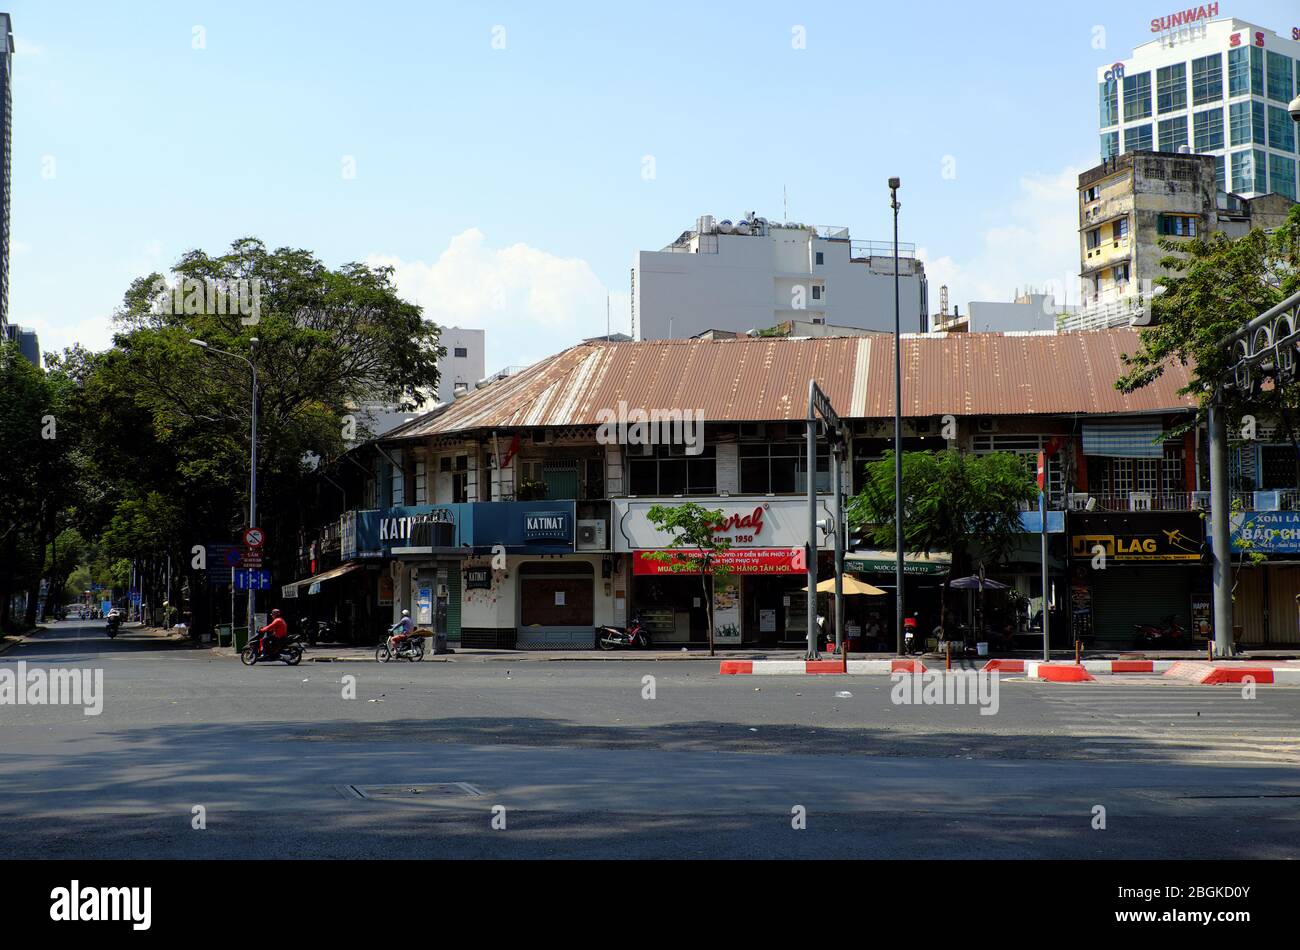 HO CHI MINH STADT, einsame Straße, ruhige Szene im zentralen Bereich Wirkung auf Anfrage Grenze bewegen sich in Pandemie, Handelsstraße geschlossen am Tag Stockfoto